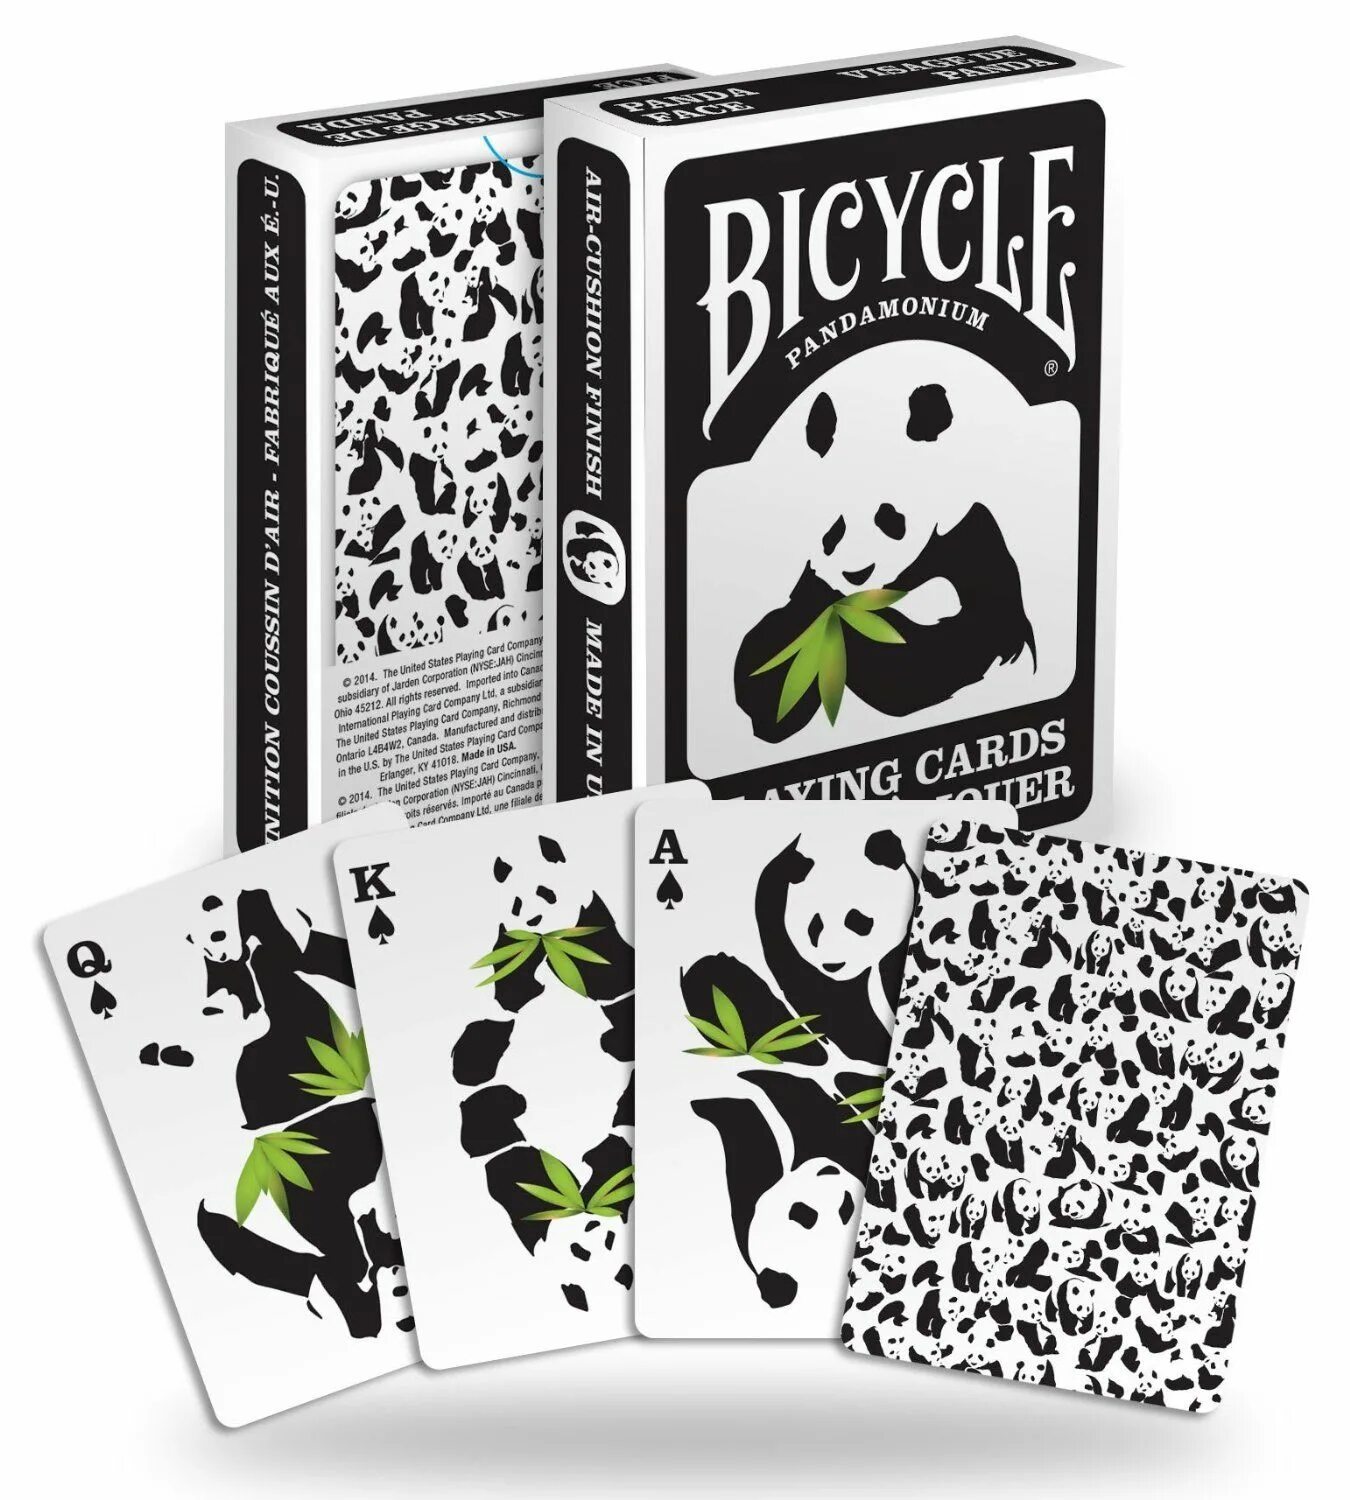 Купить карту с пандой. Панда с картами. Bicycle карты Панда. Игральные карты Панда. Панда с колода карт.